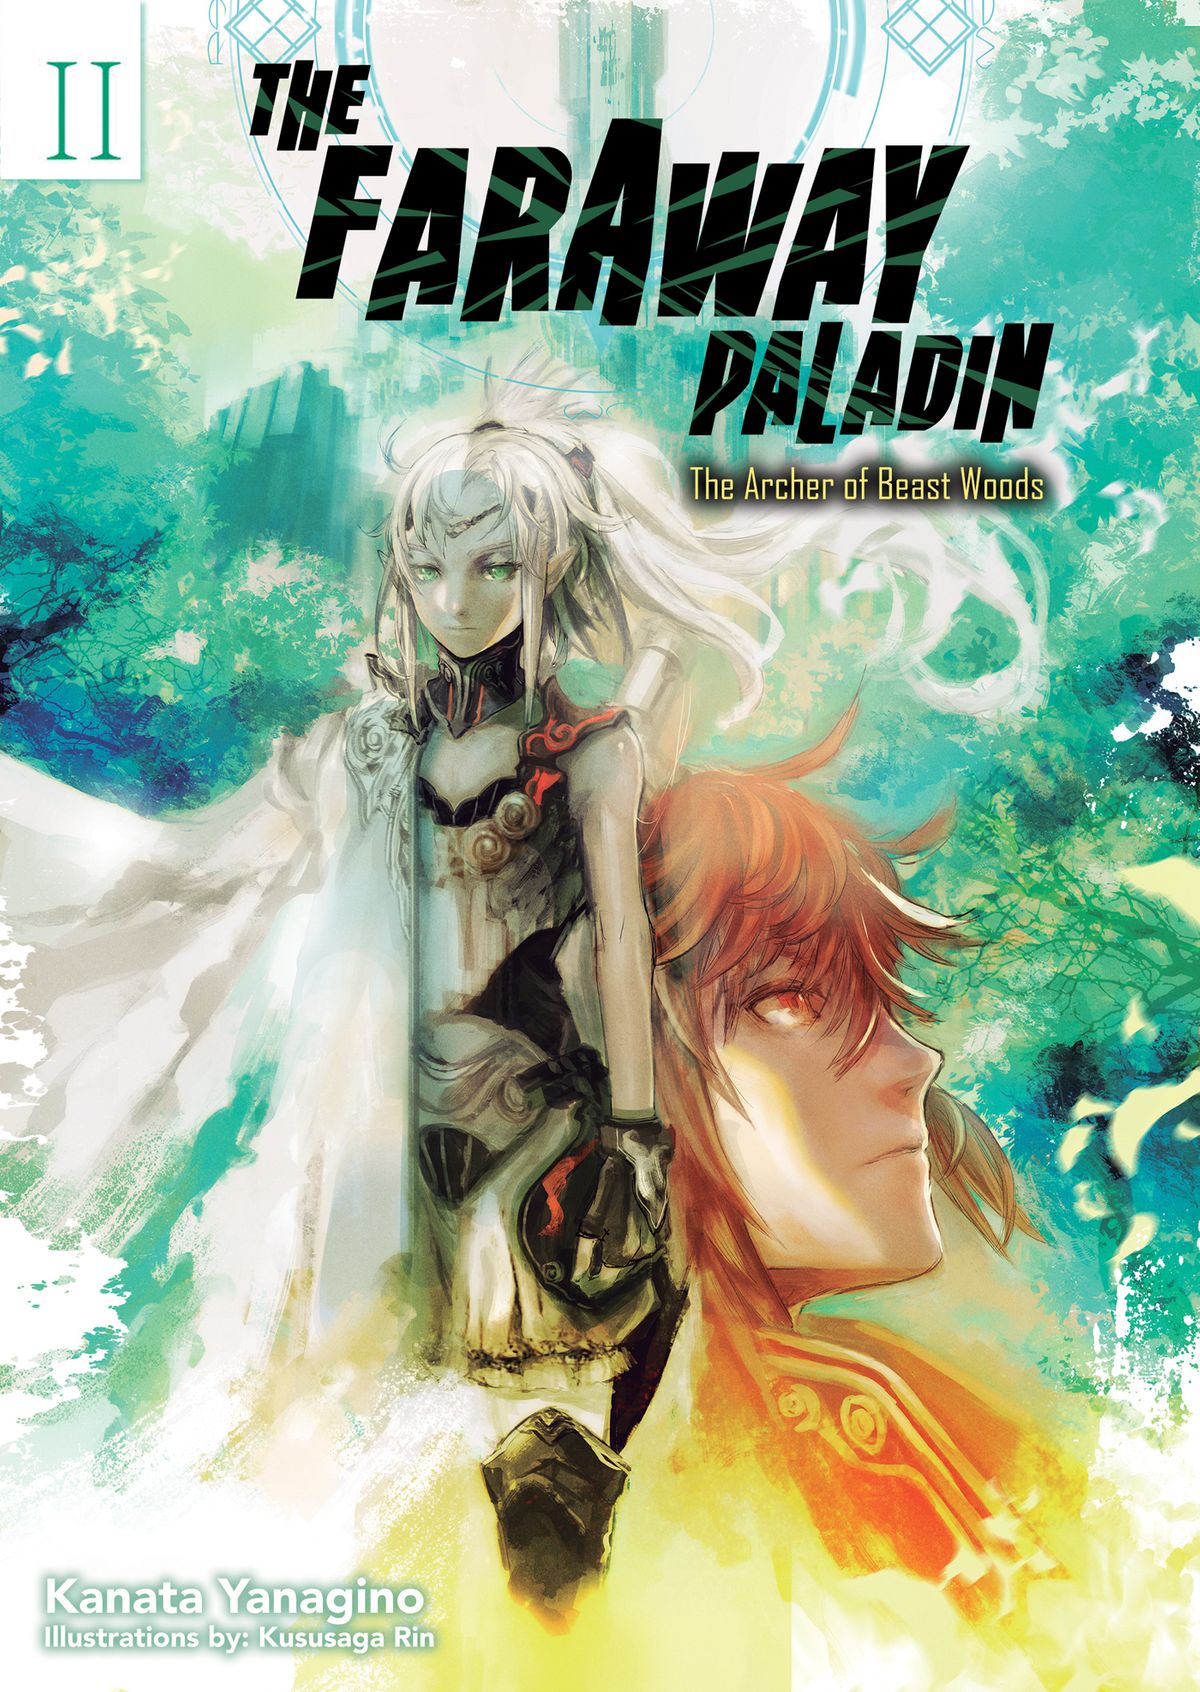 Saihate no Paladin Set Details about   JAPAN Kanata Yanagino novel The Faraway Paladin 